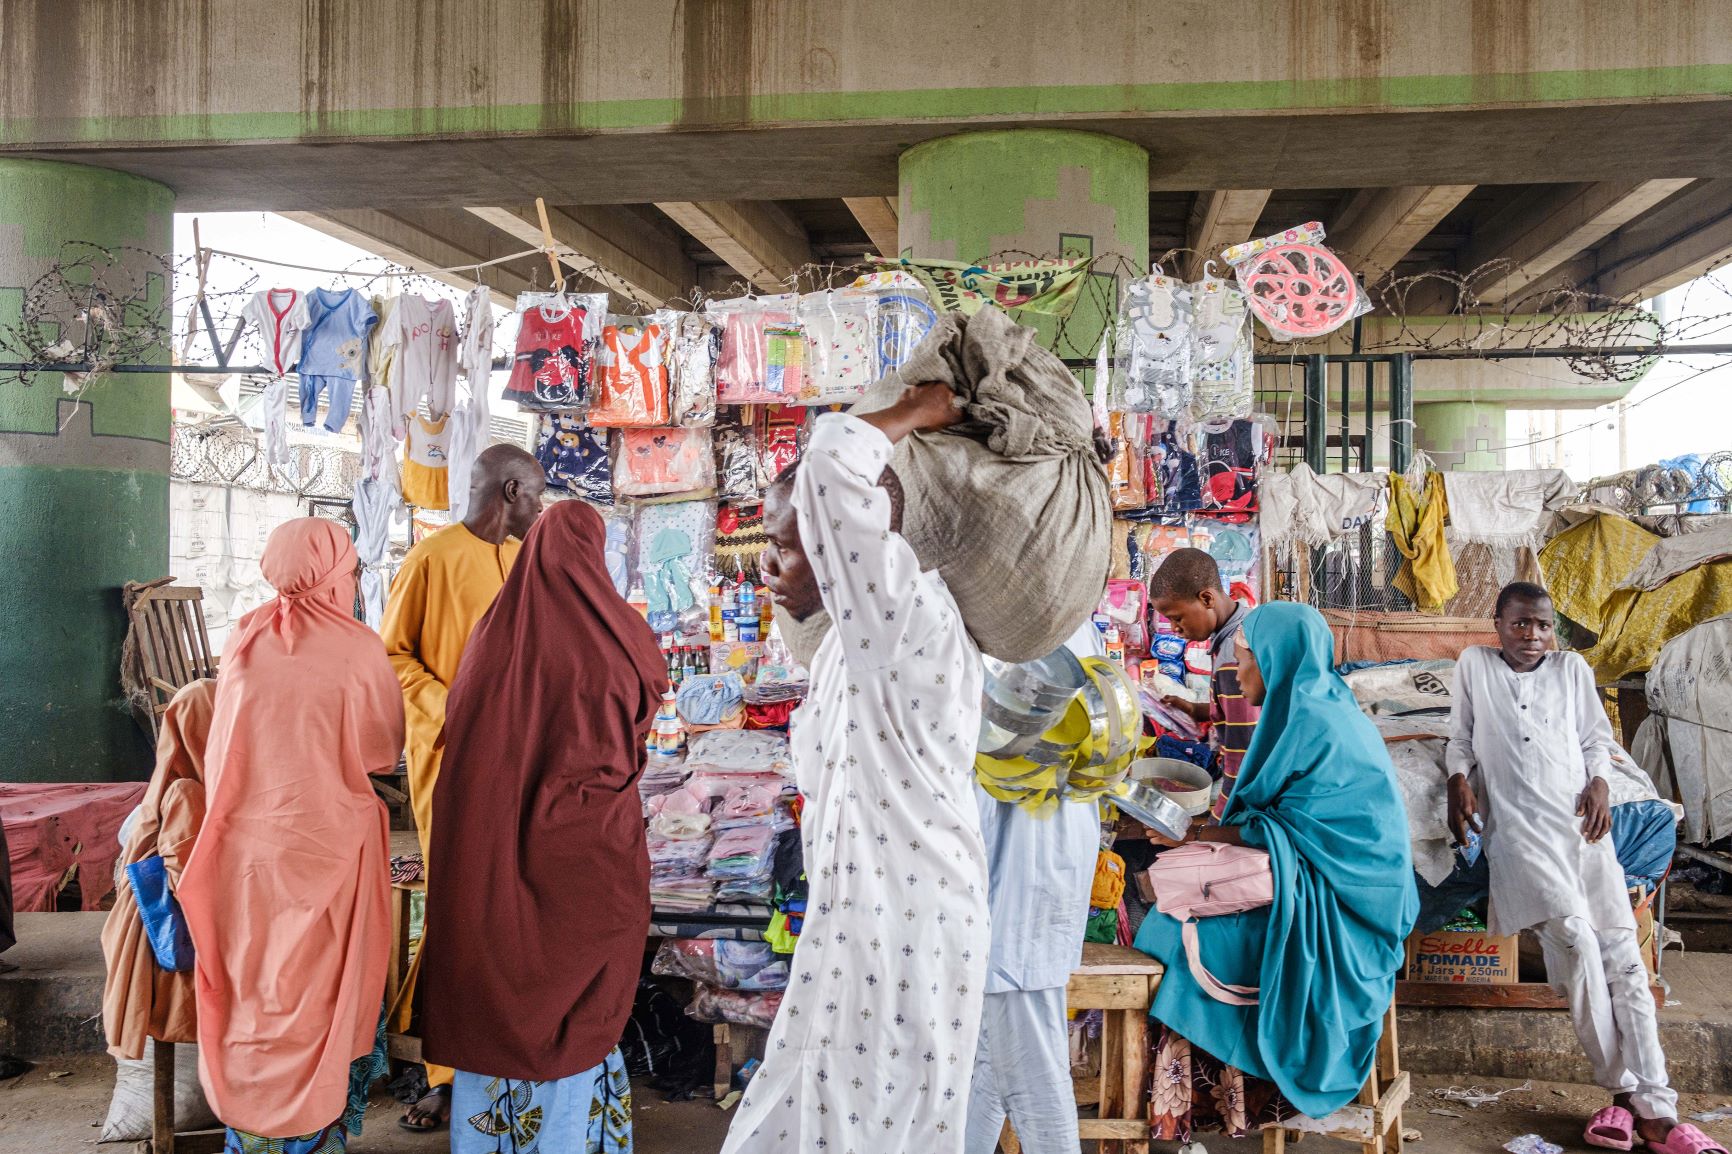 Nigéria enfrenta sua pior crise econômica em uma geração